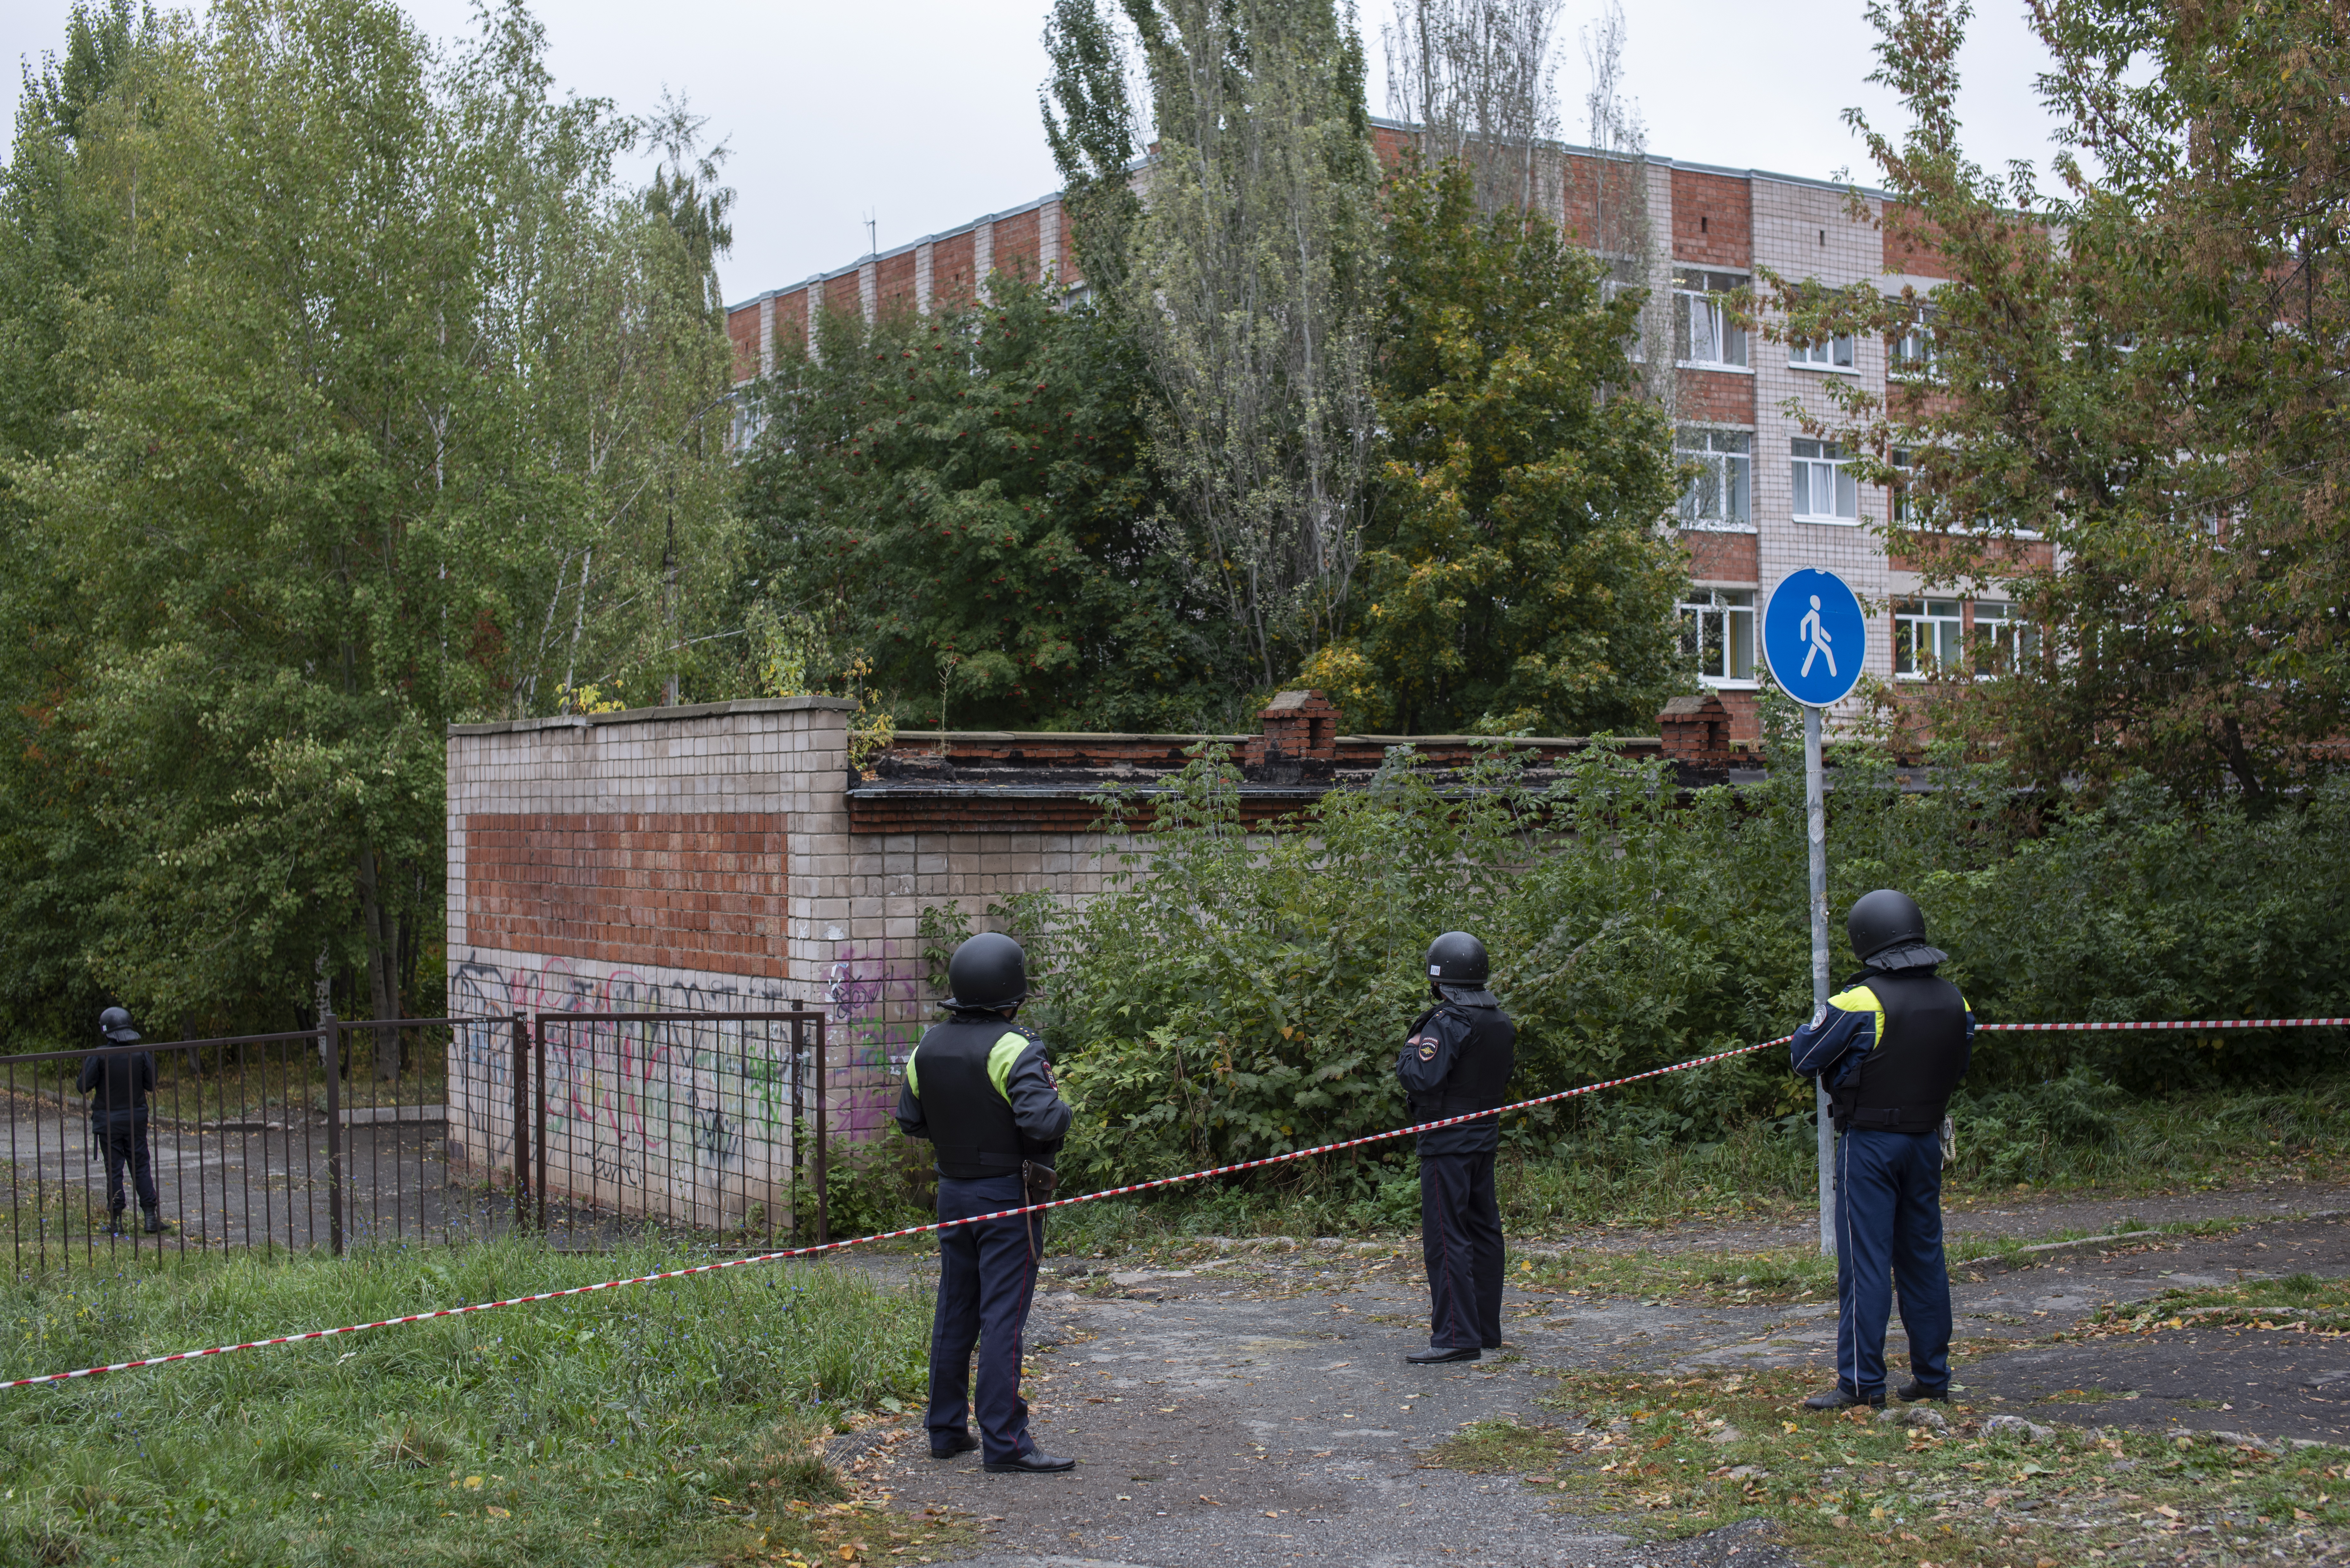 Al menos trece personas, incluyendo siete niños, murieron en un tiroteo ocurrido en una escuela de Izhevsk, en el centro de Rusia. (Foto Prensa Libre: EFE)